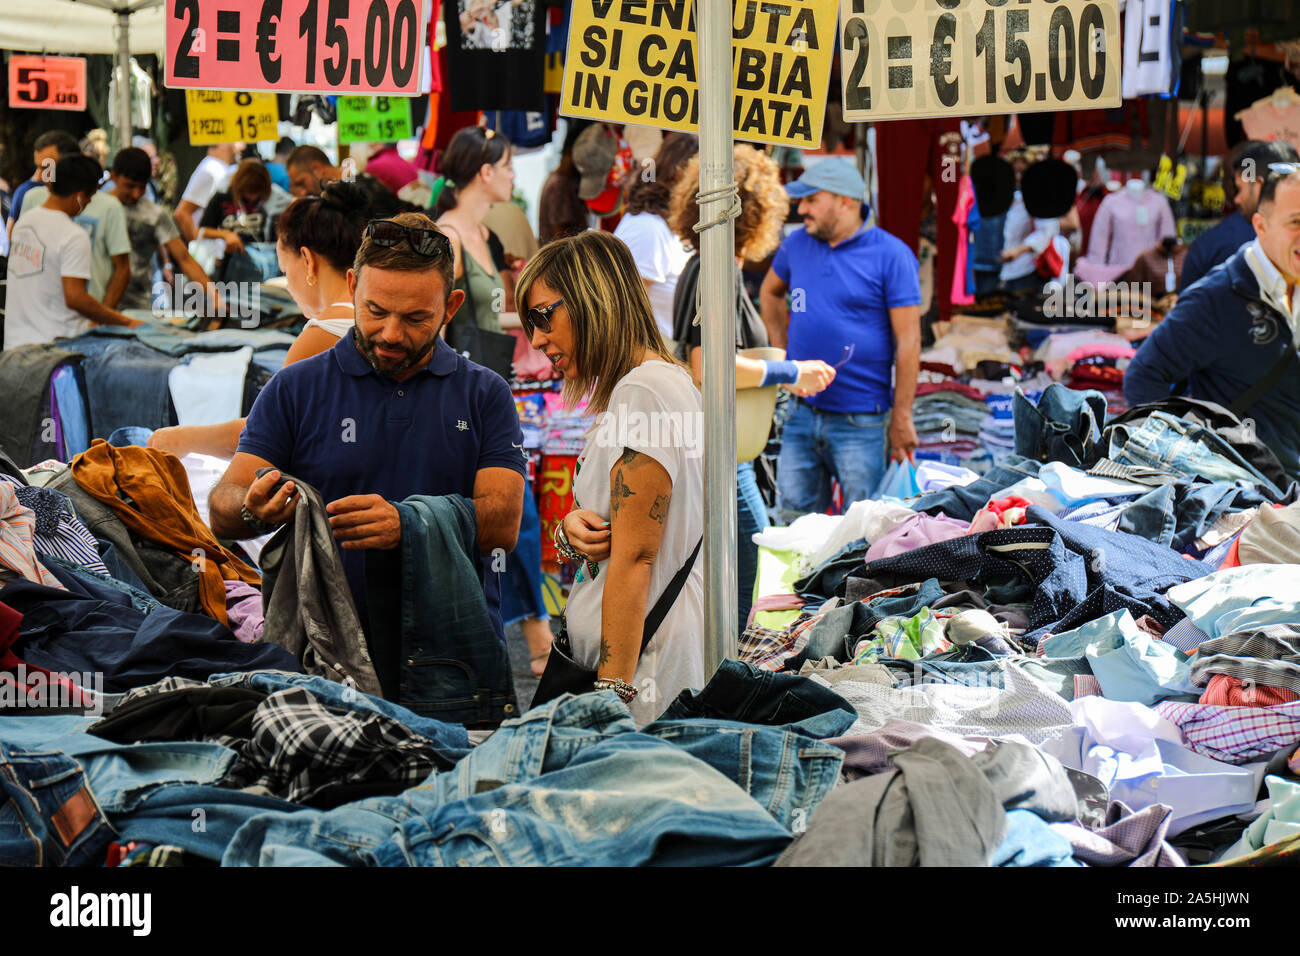 Mercato Di Porta Portese - un camino largo mercado lleno de ropa barata,  bienes usados y baratijas, en Roma, Italia Fotografía de stock - Alamy